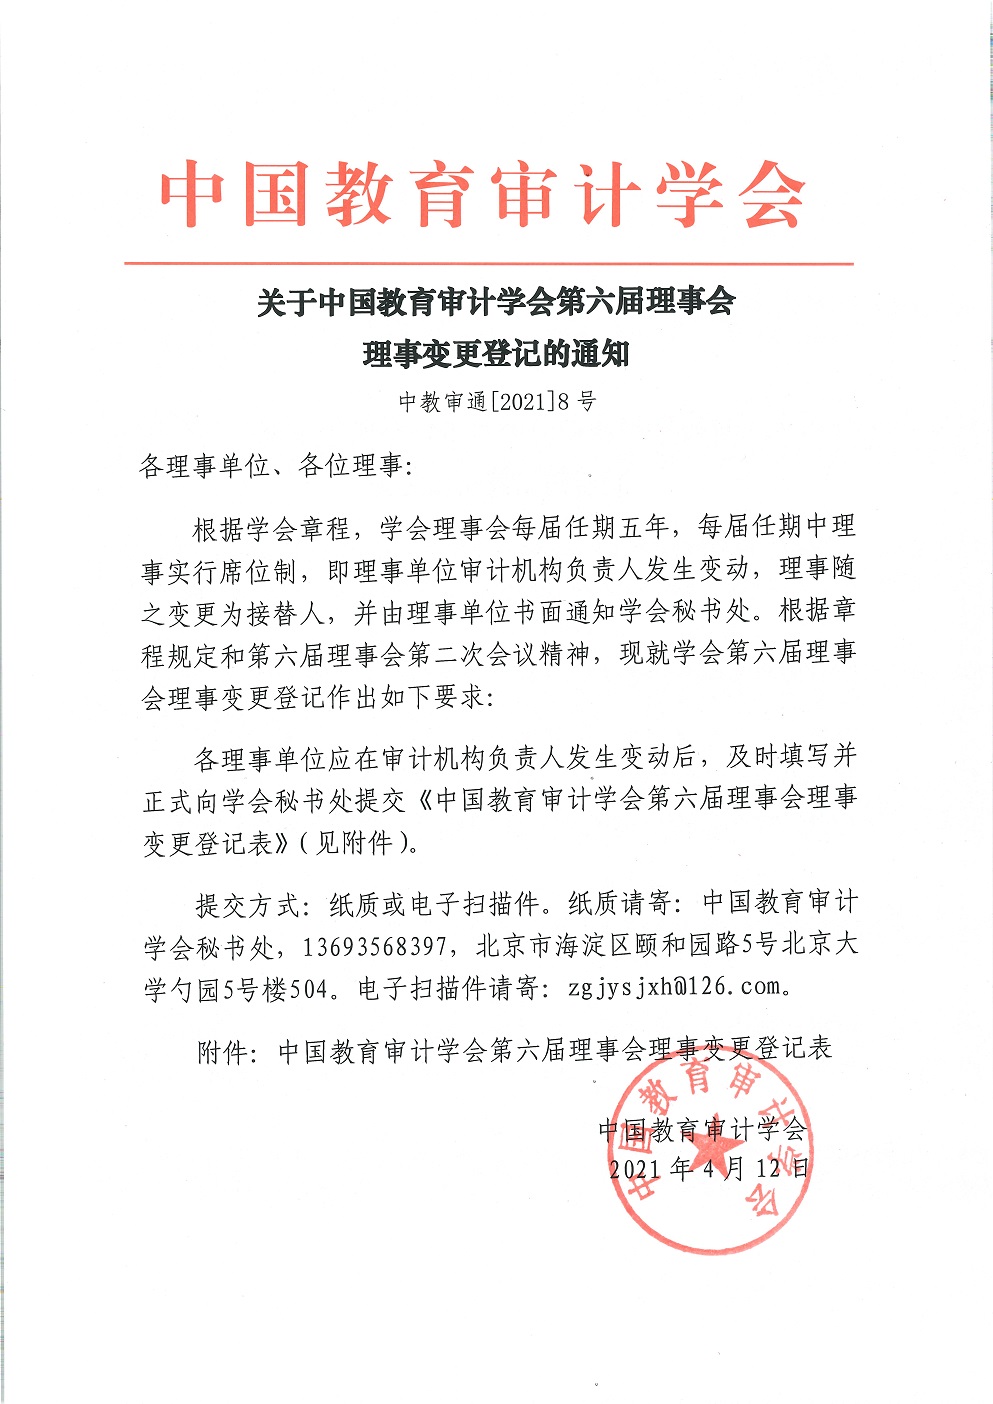 中教审通[2021]8号—关于中国教育审计学会第六届理事会理事变更登记的通知_页面_1.jpg